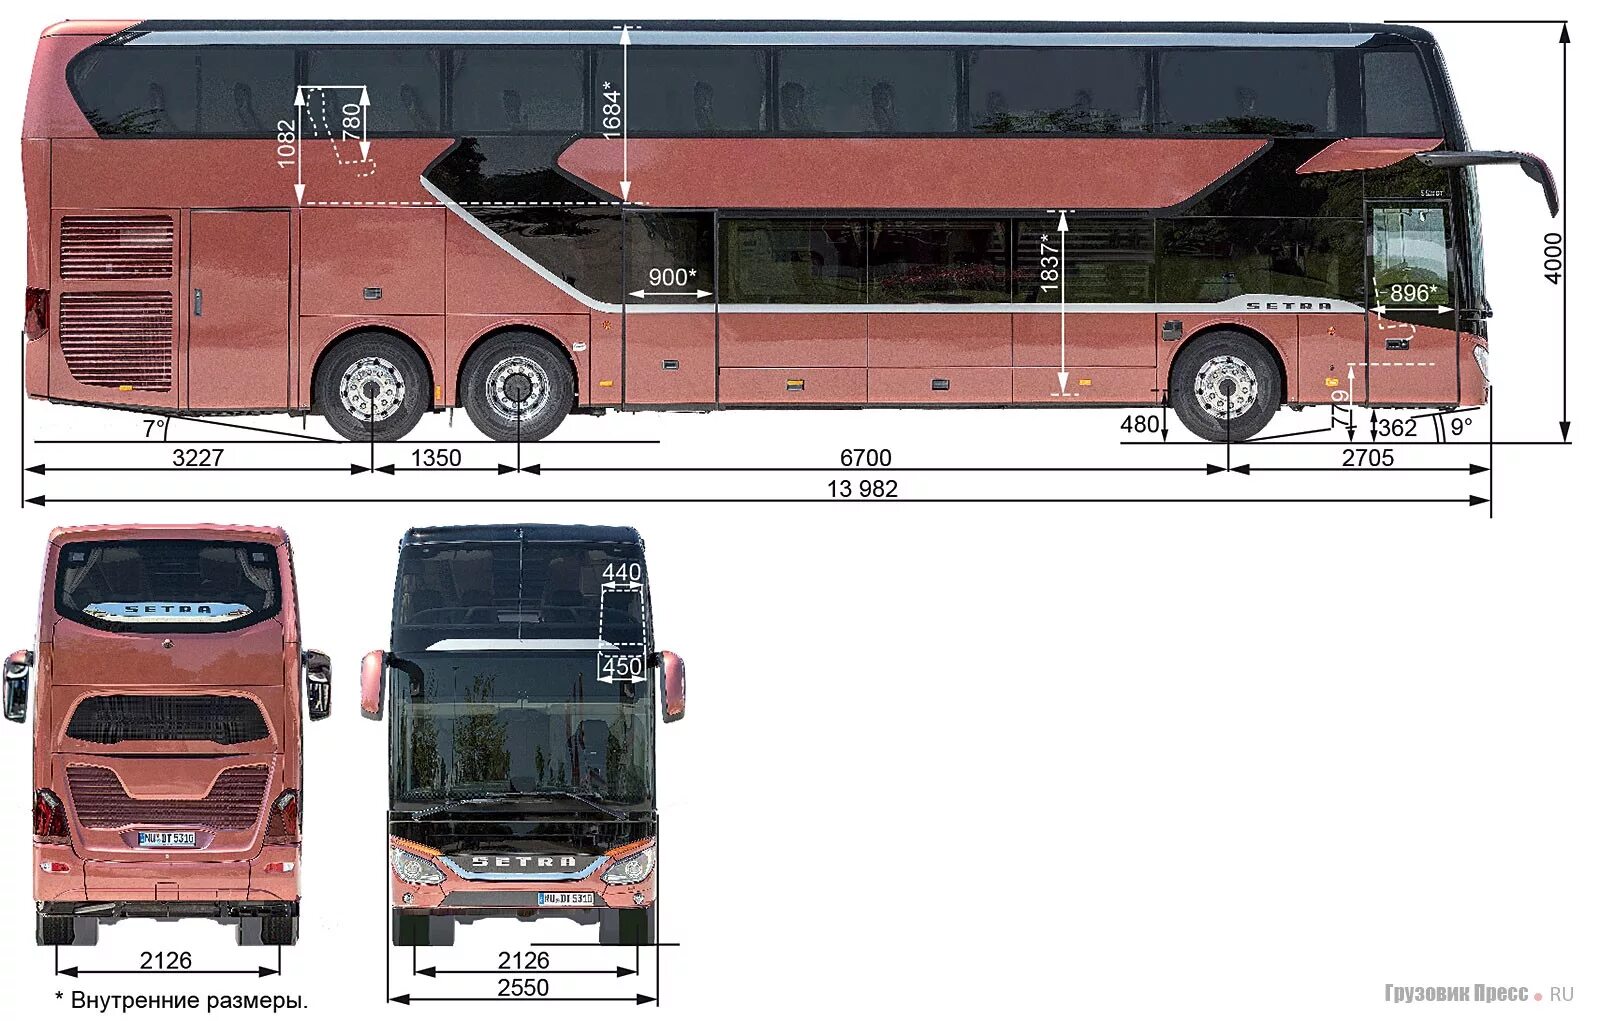 Какая длина автобуса. Автобус Setra s328dt. Автобус Setra габариты. Автобус сетра габариты. Setra s328dt чертеж.